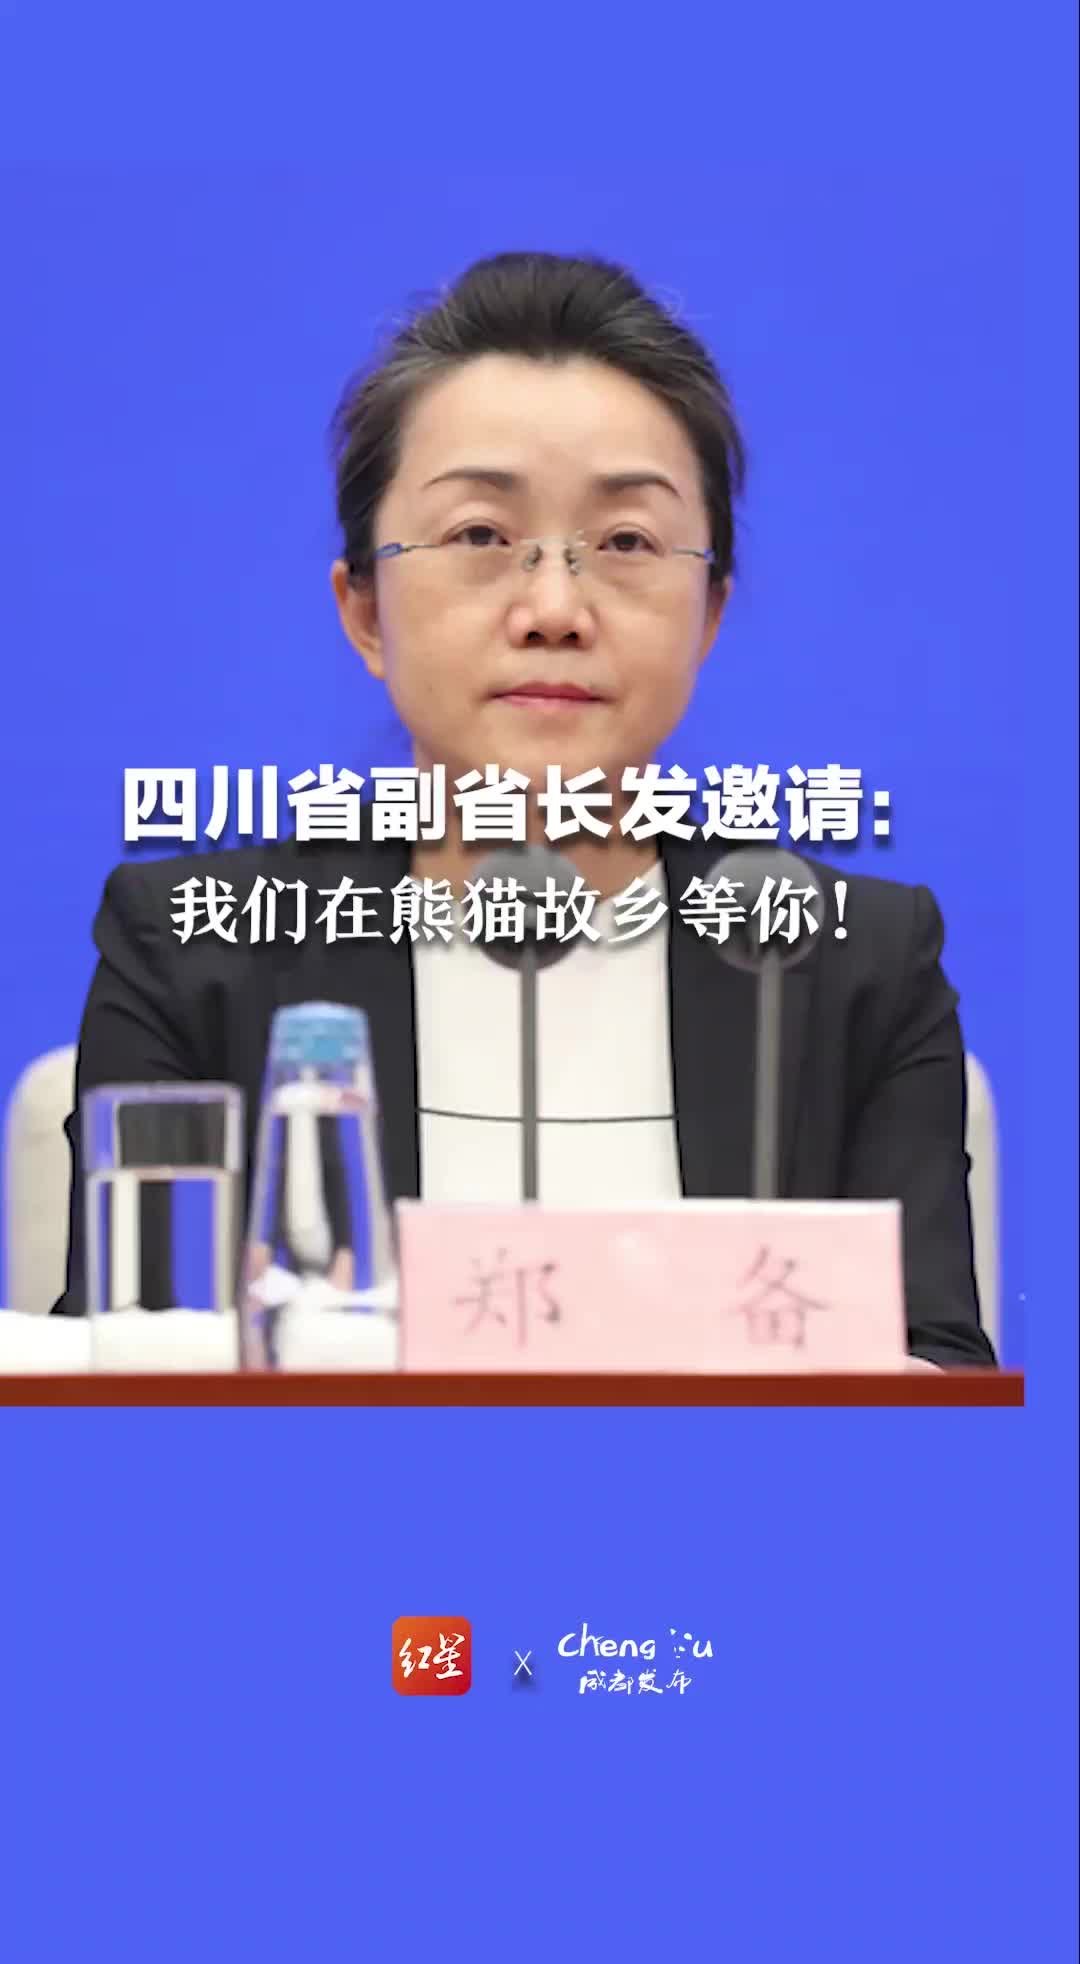 四川省副省长发邀请：我们在熊猫故乡等你